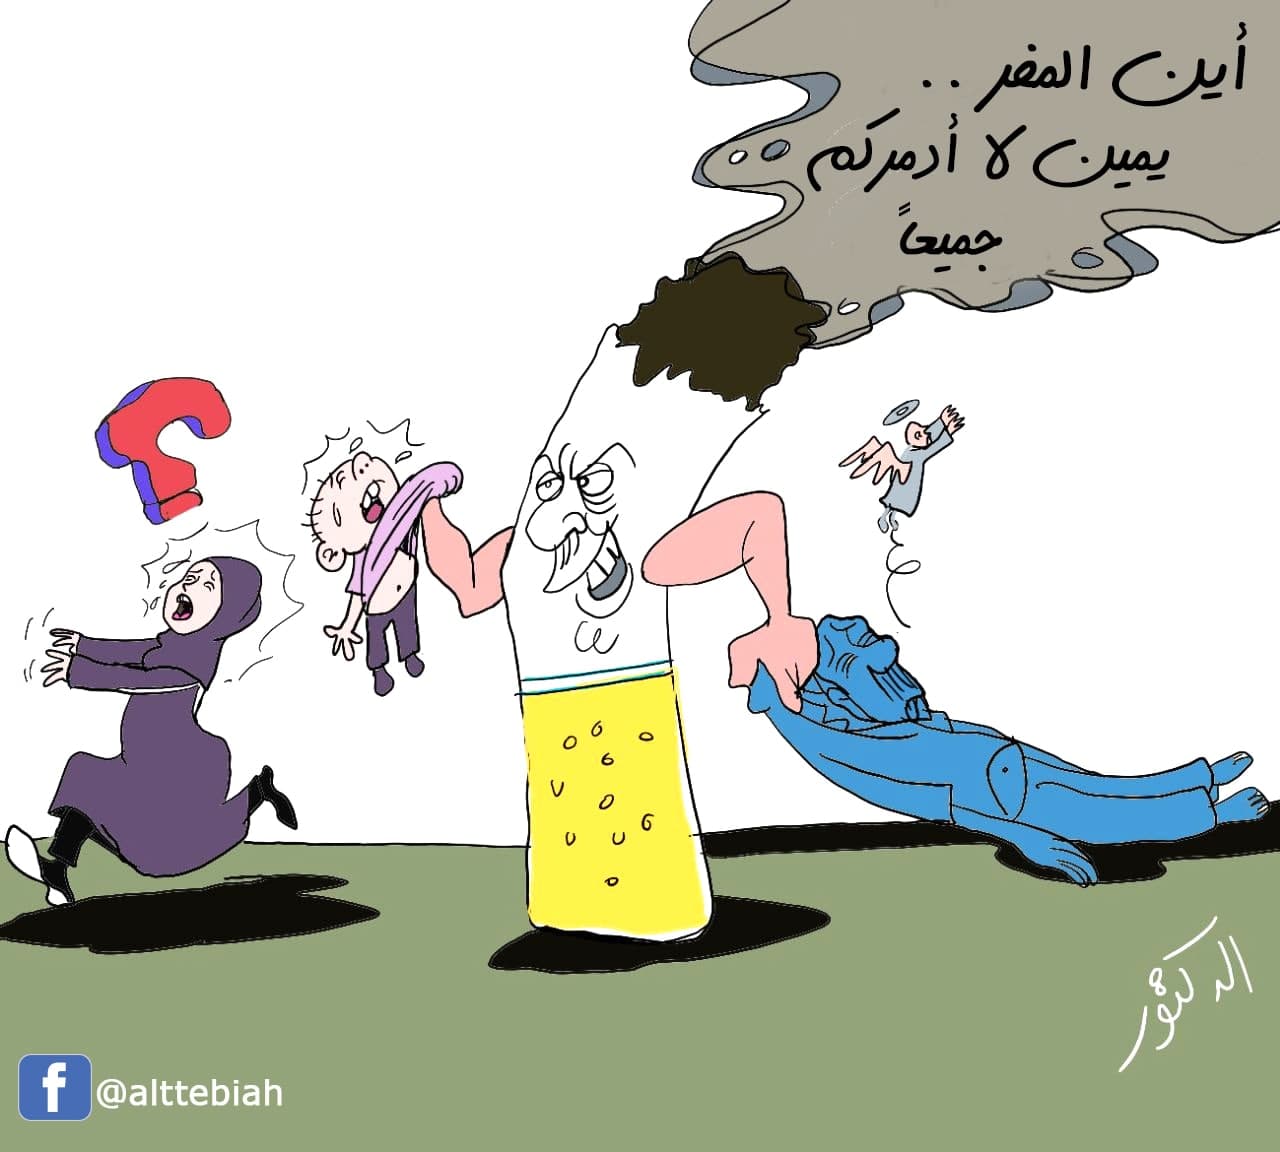 رسم كاريكاتير عن التدخين